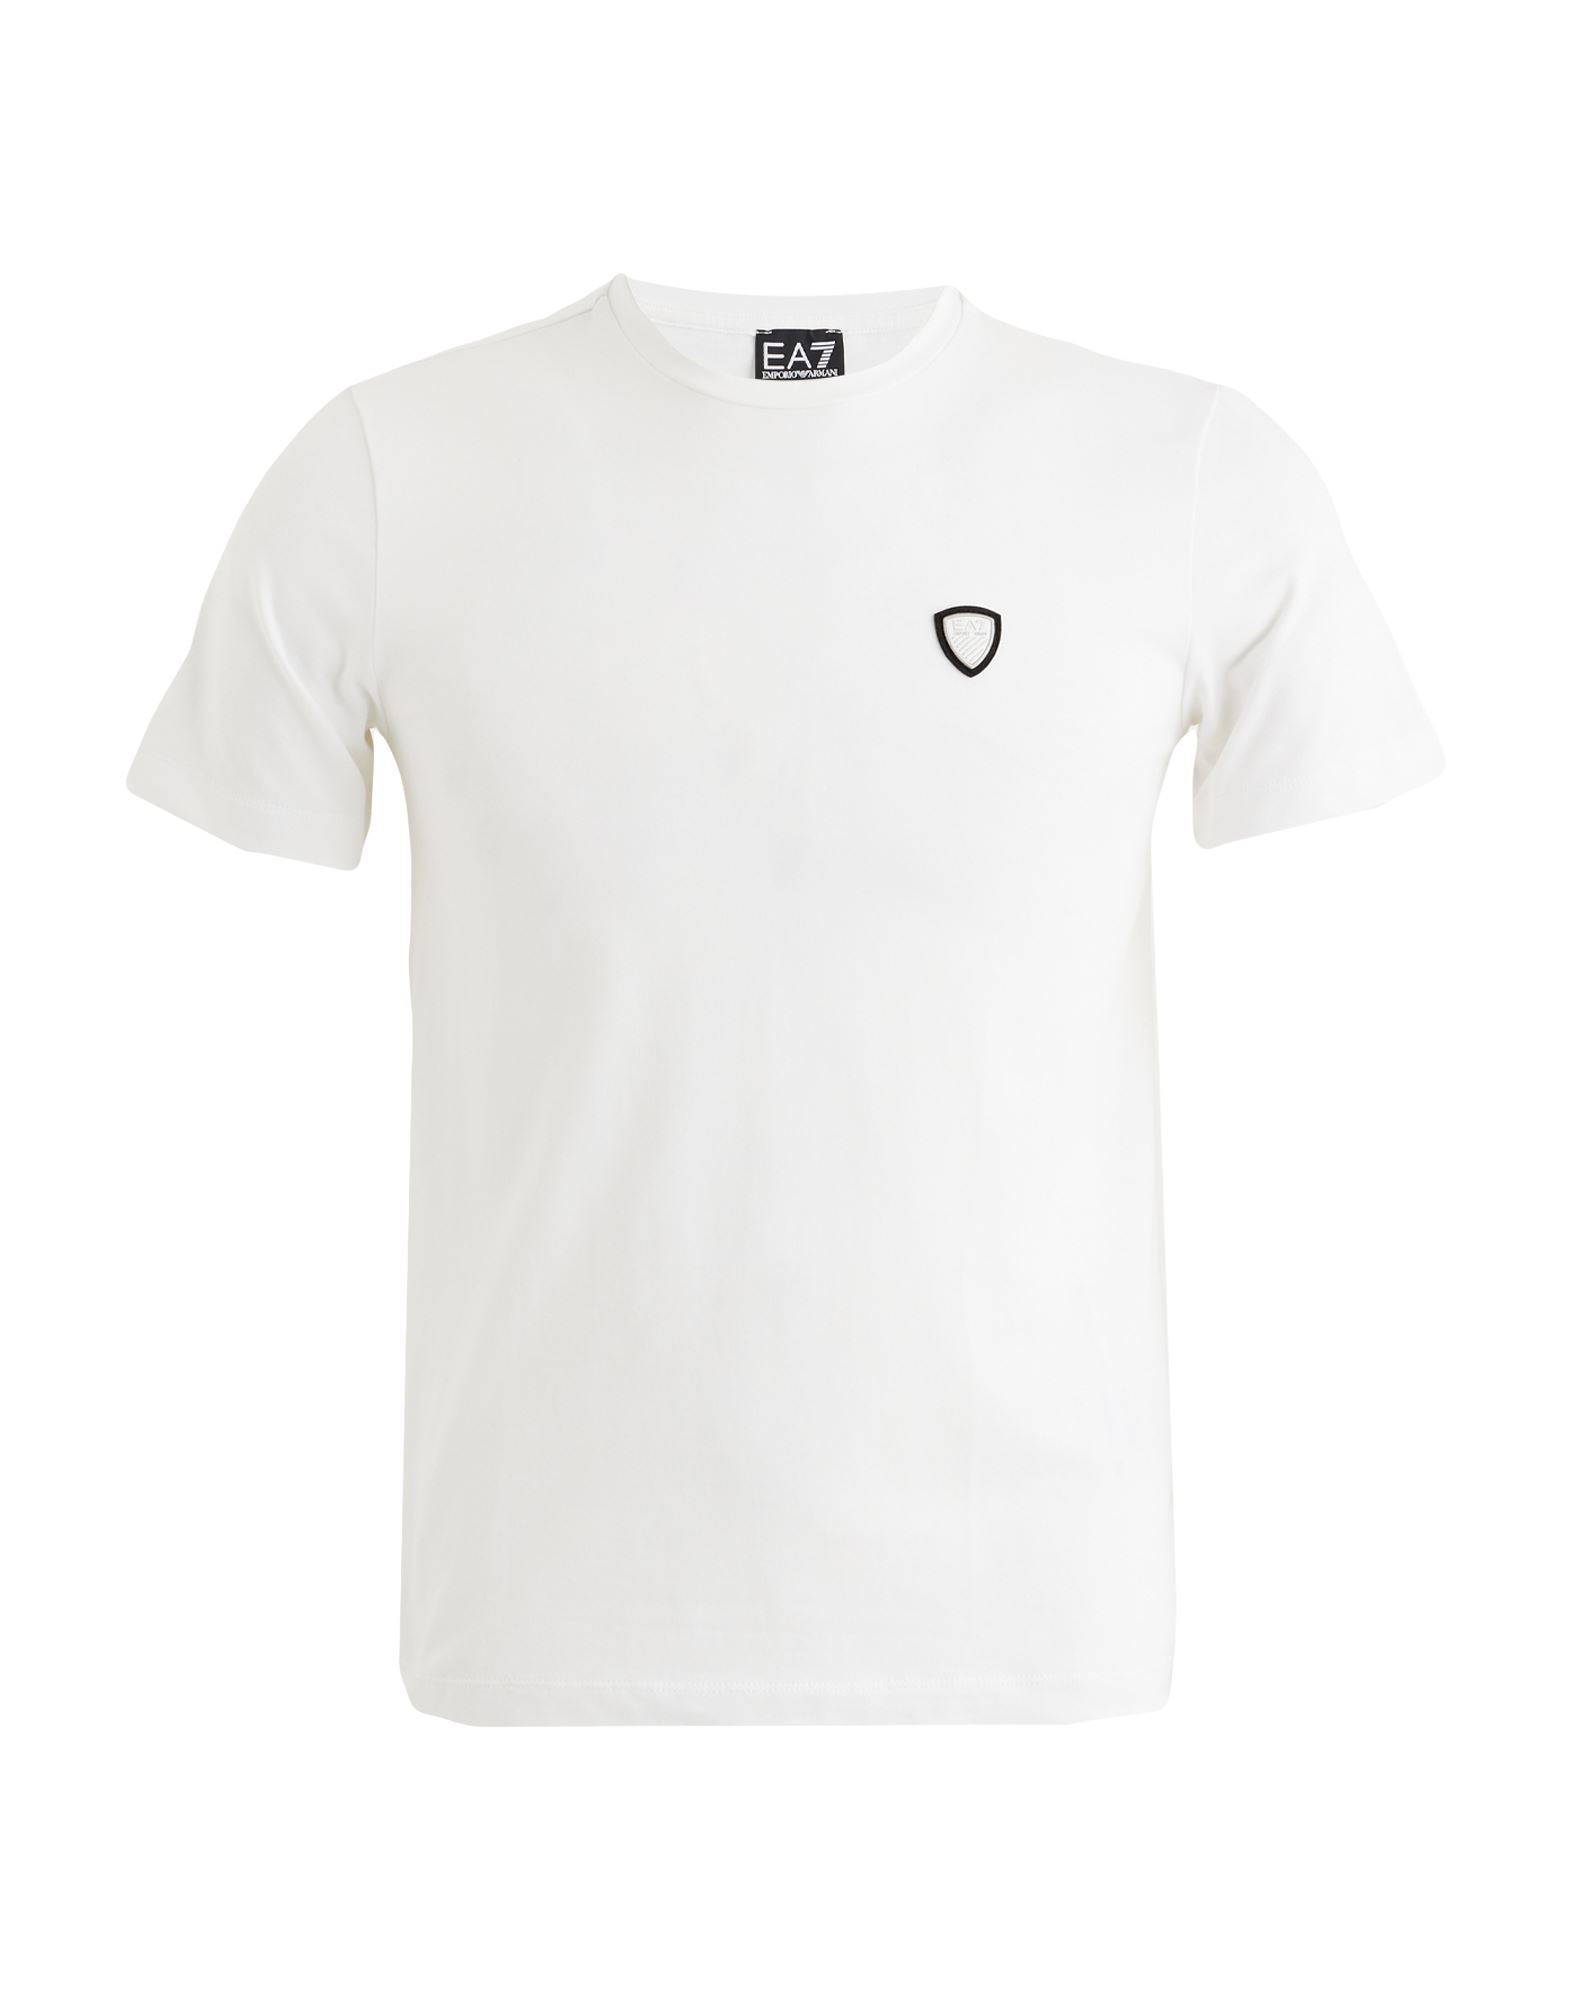 EA7 T-shirts Herren Weiß von EA7